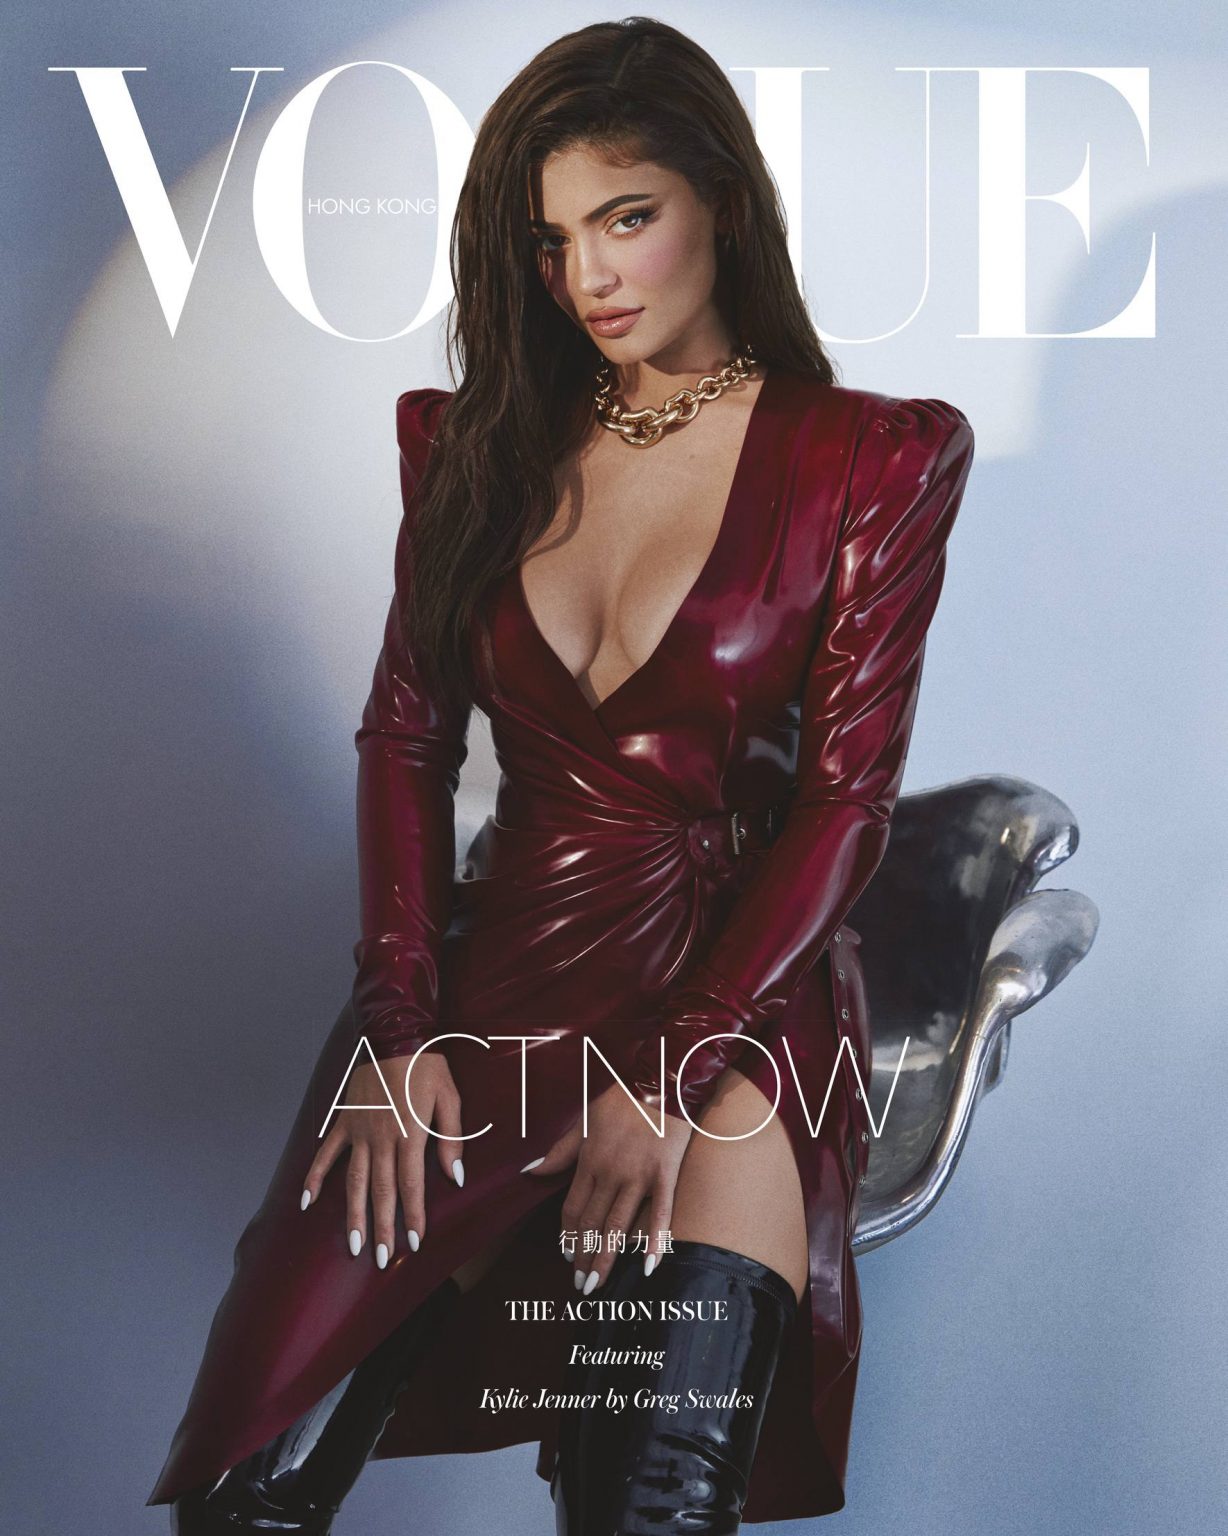 FOTOS Kylie Jenner Aergrafo al olvido para Vogue! - Photo 5